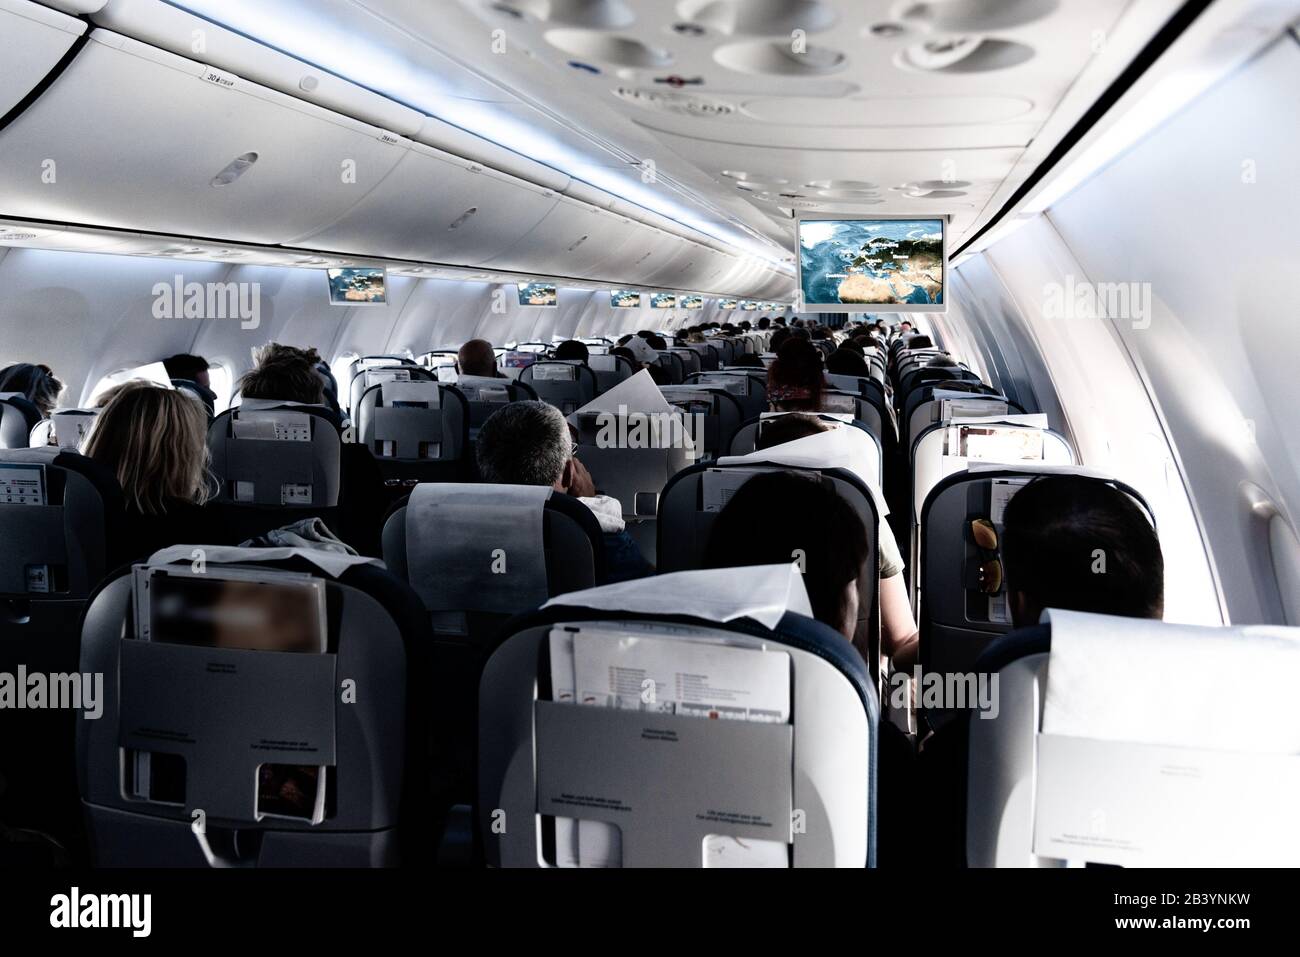 Vue sur la cabine de passagers d'avions commerciaux avec des voyageurs non reconnaissables assis pendant le vol. Concept de voyage. Banque D'Images